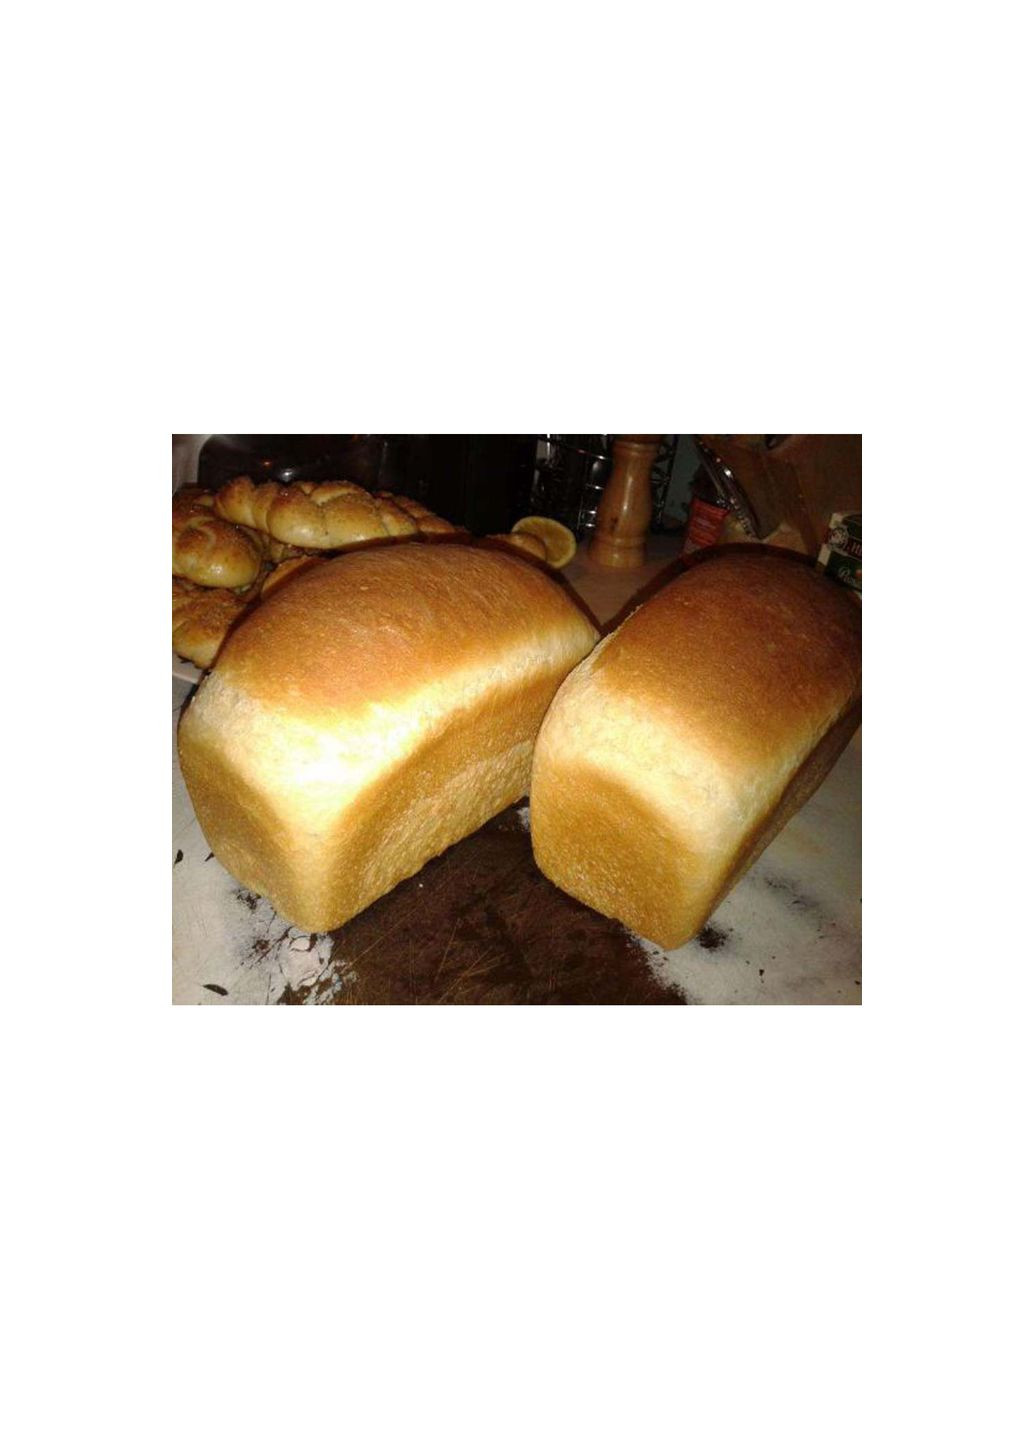 Форма хлебная для выпечки бородинского хлеба Л12а алюминий (17*11*9 см) Полімет (279556026)